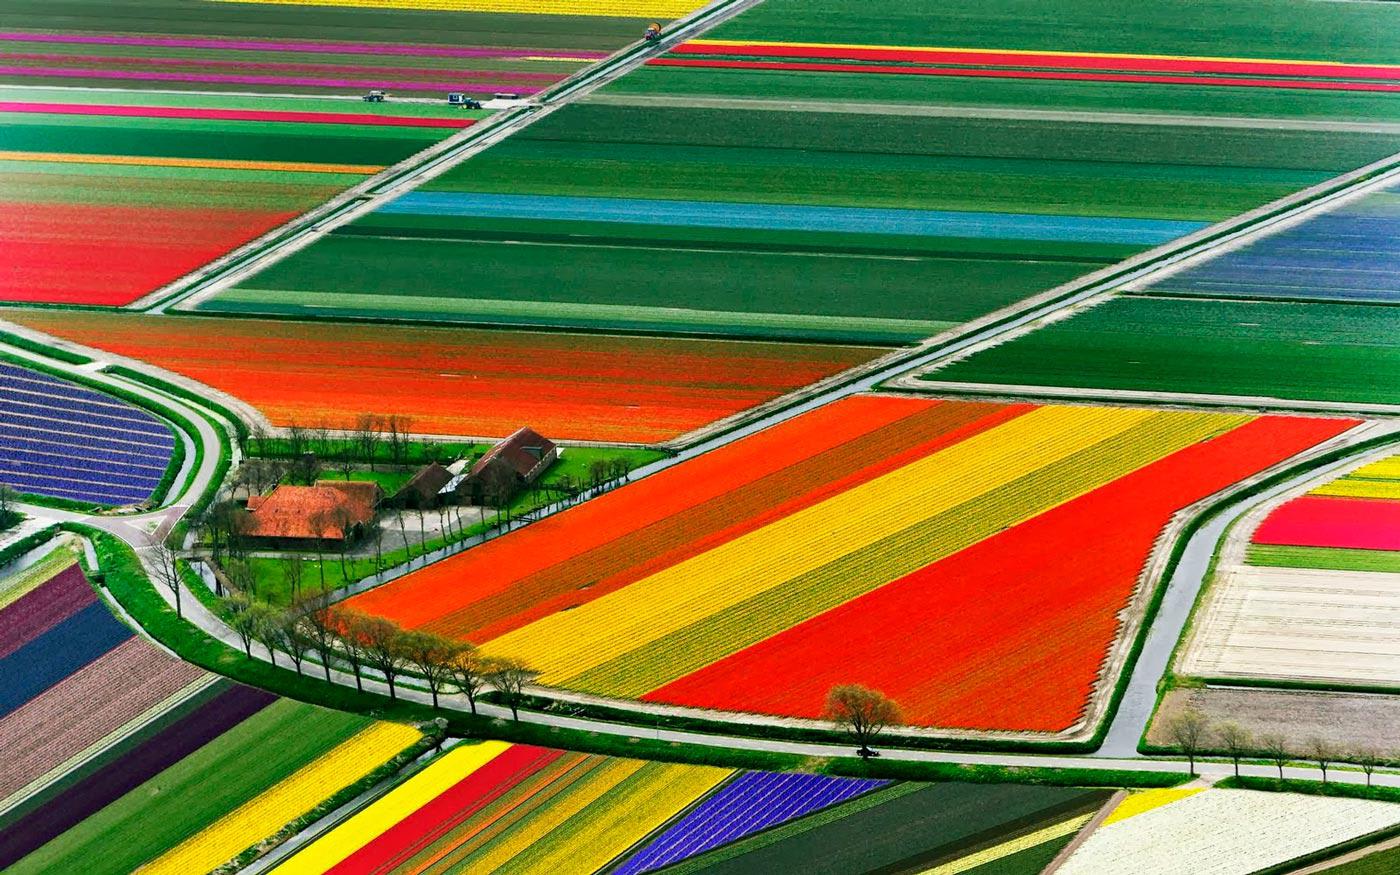 Tulip fields in Keukenhof, Netherlands